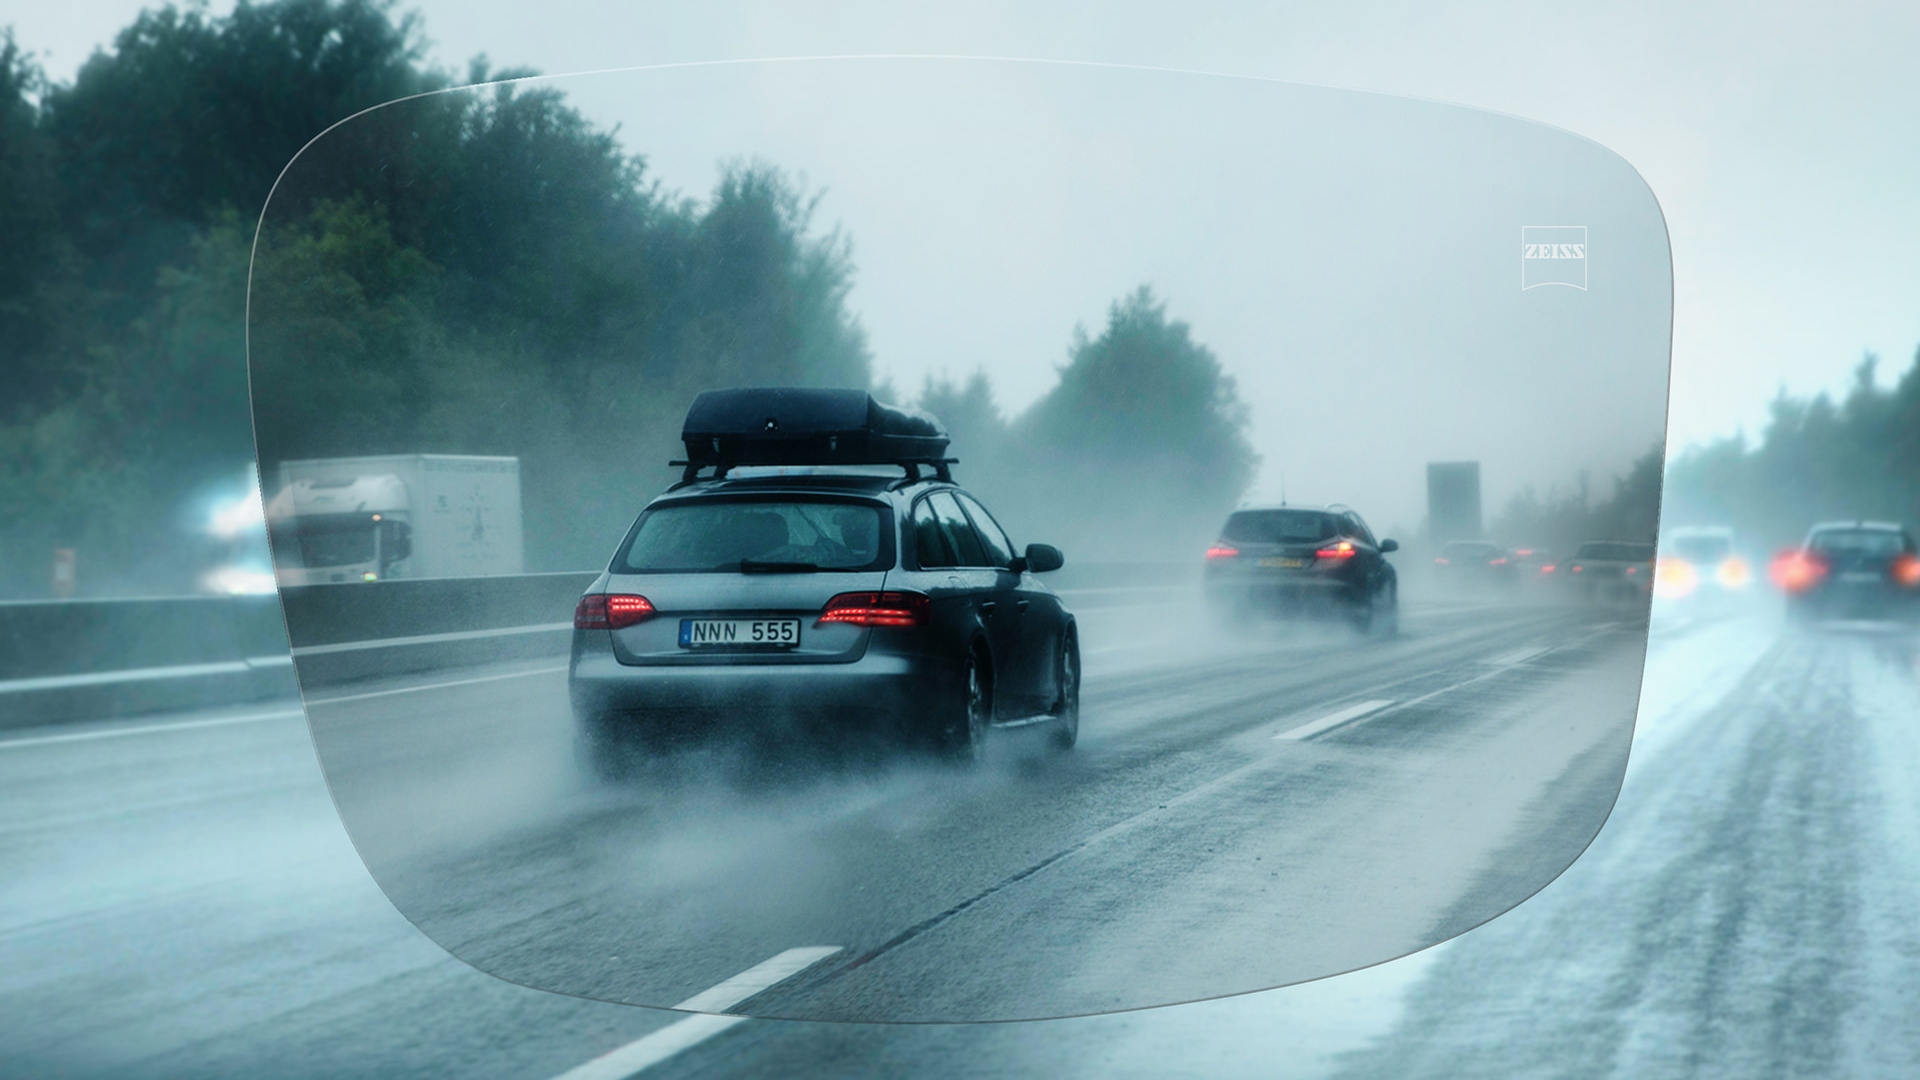 透過蔡司 DriveSafe 單光鏡片看到雨天高速公路的景象 